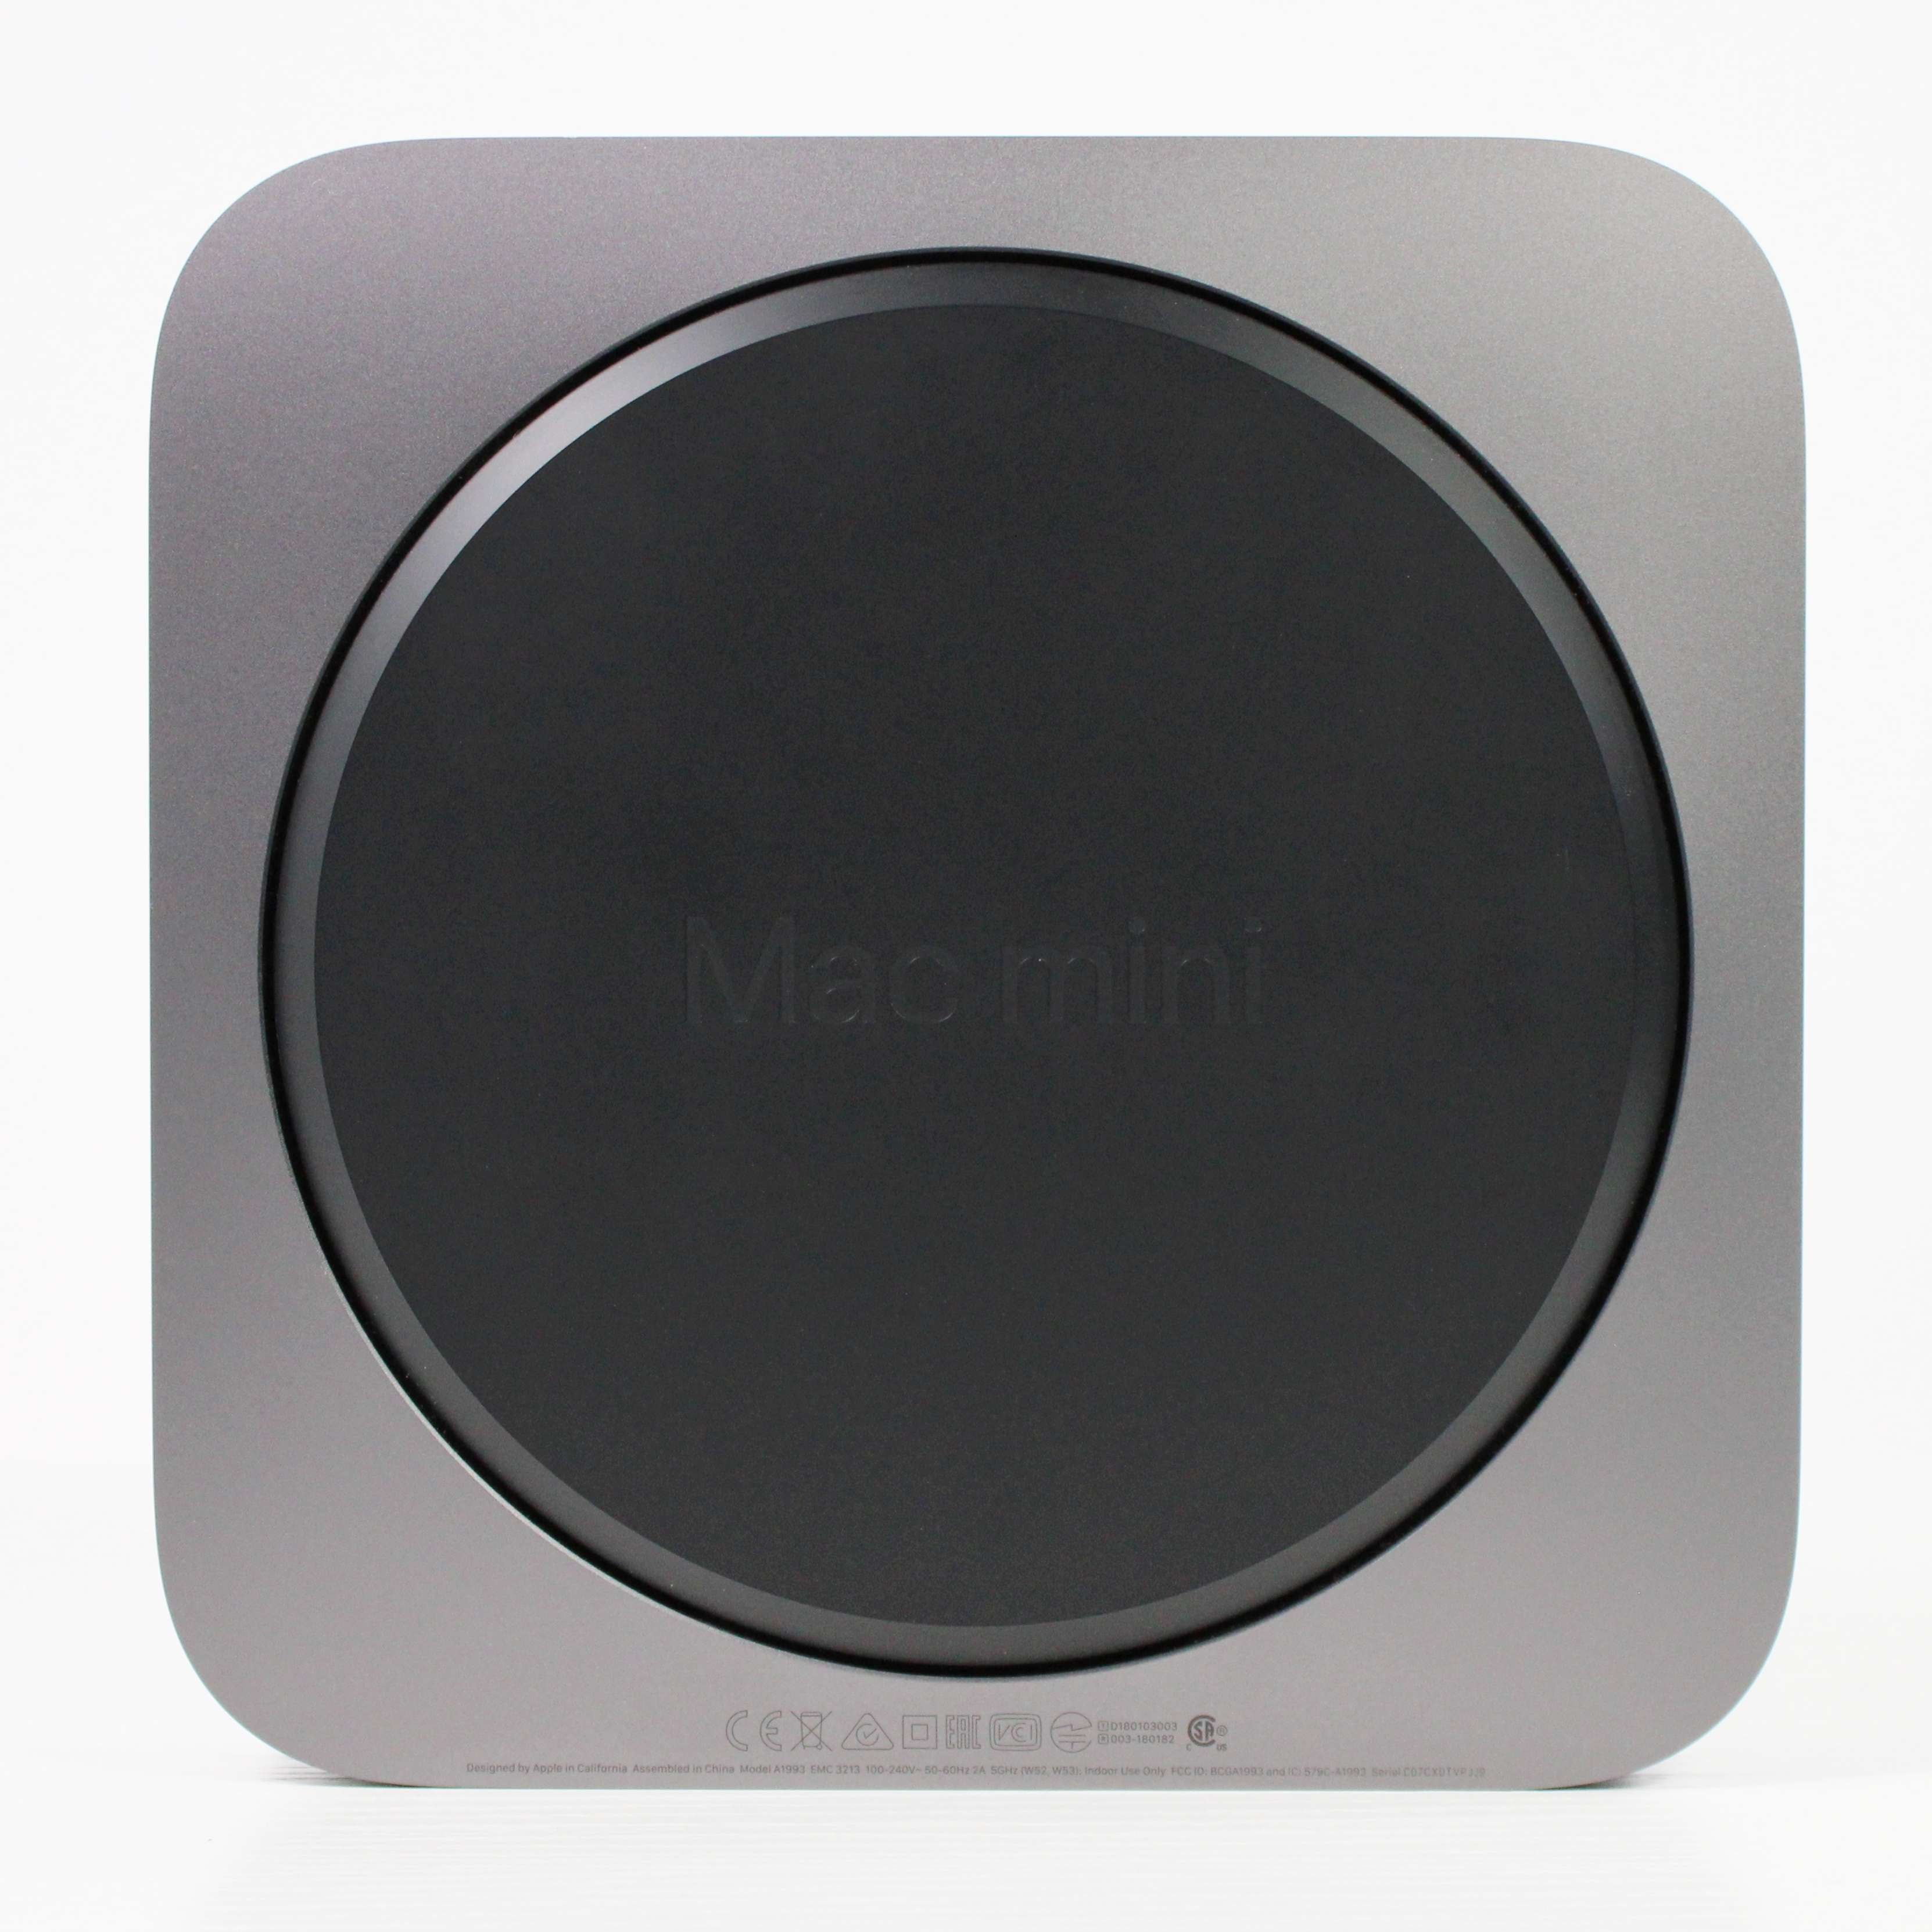 Apple Mac mini Desktop M2 Chip 8GB Memory 256GB SSD (Latest Model) Silver  MMFJ3LL/A - Best Buy